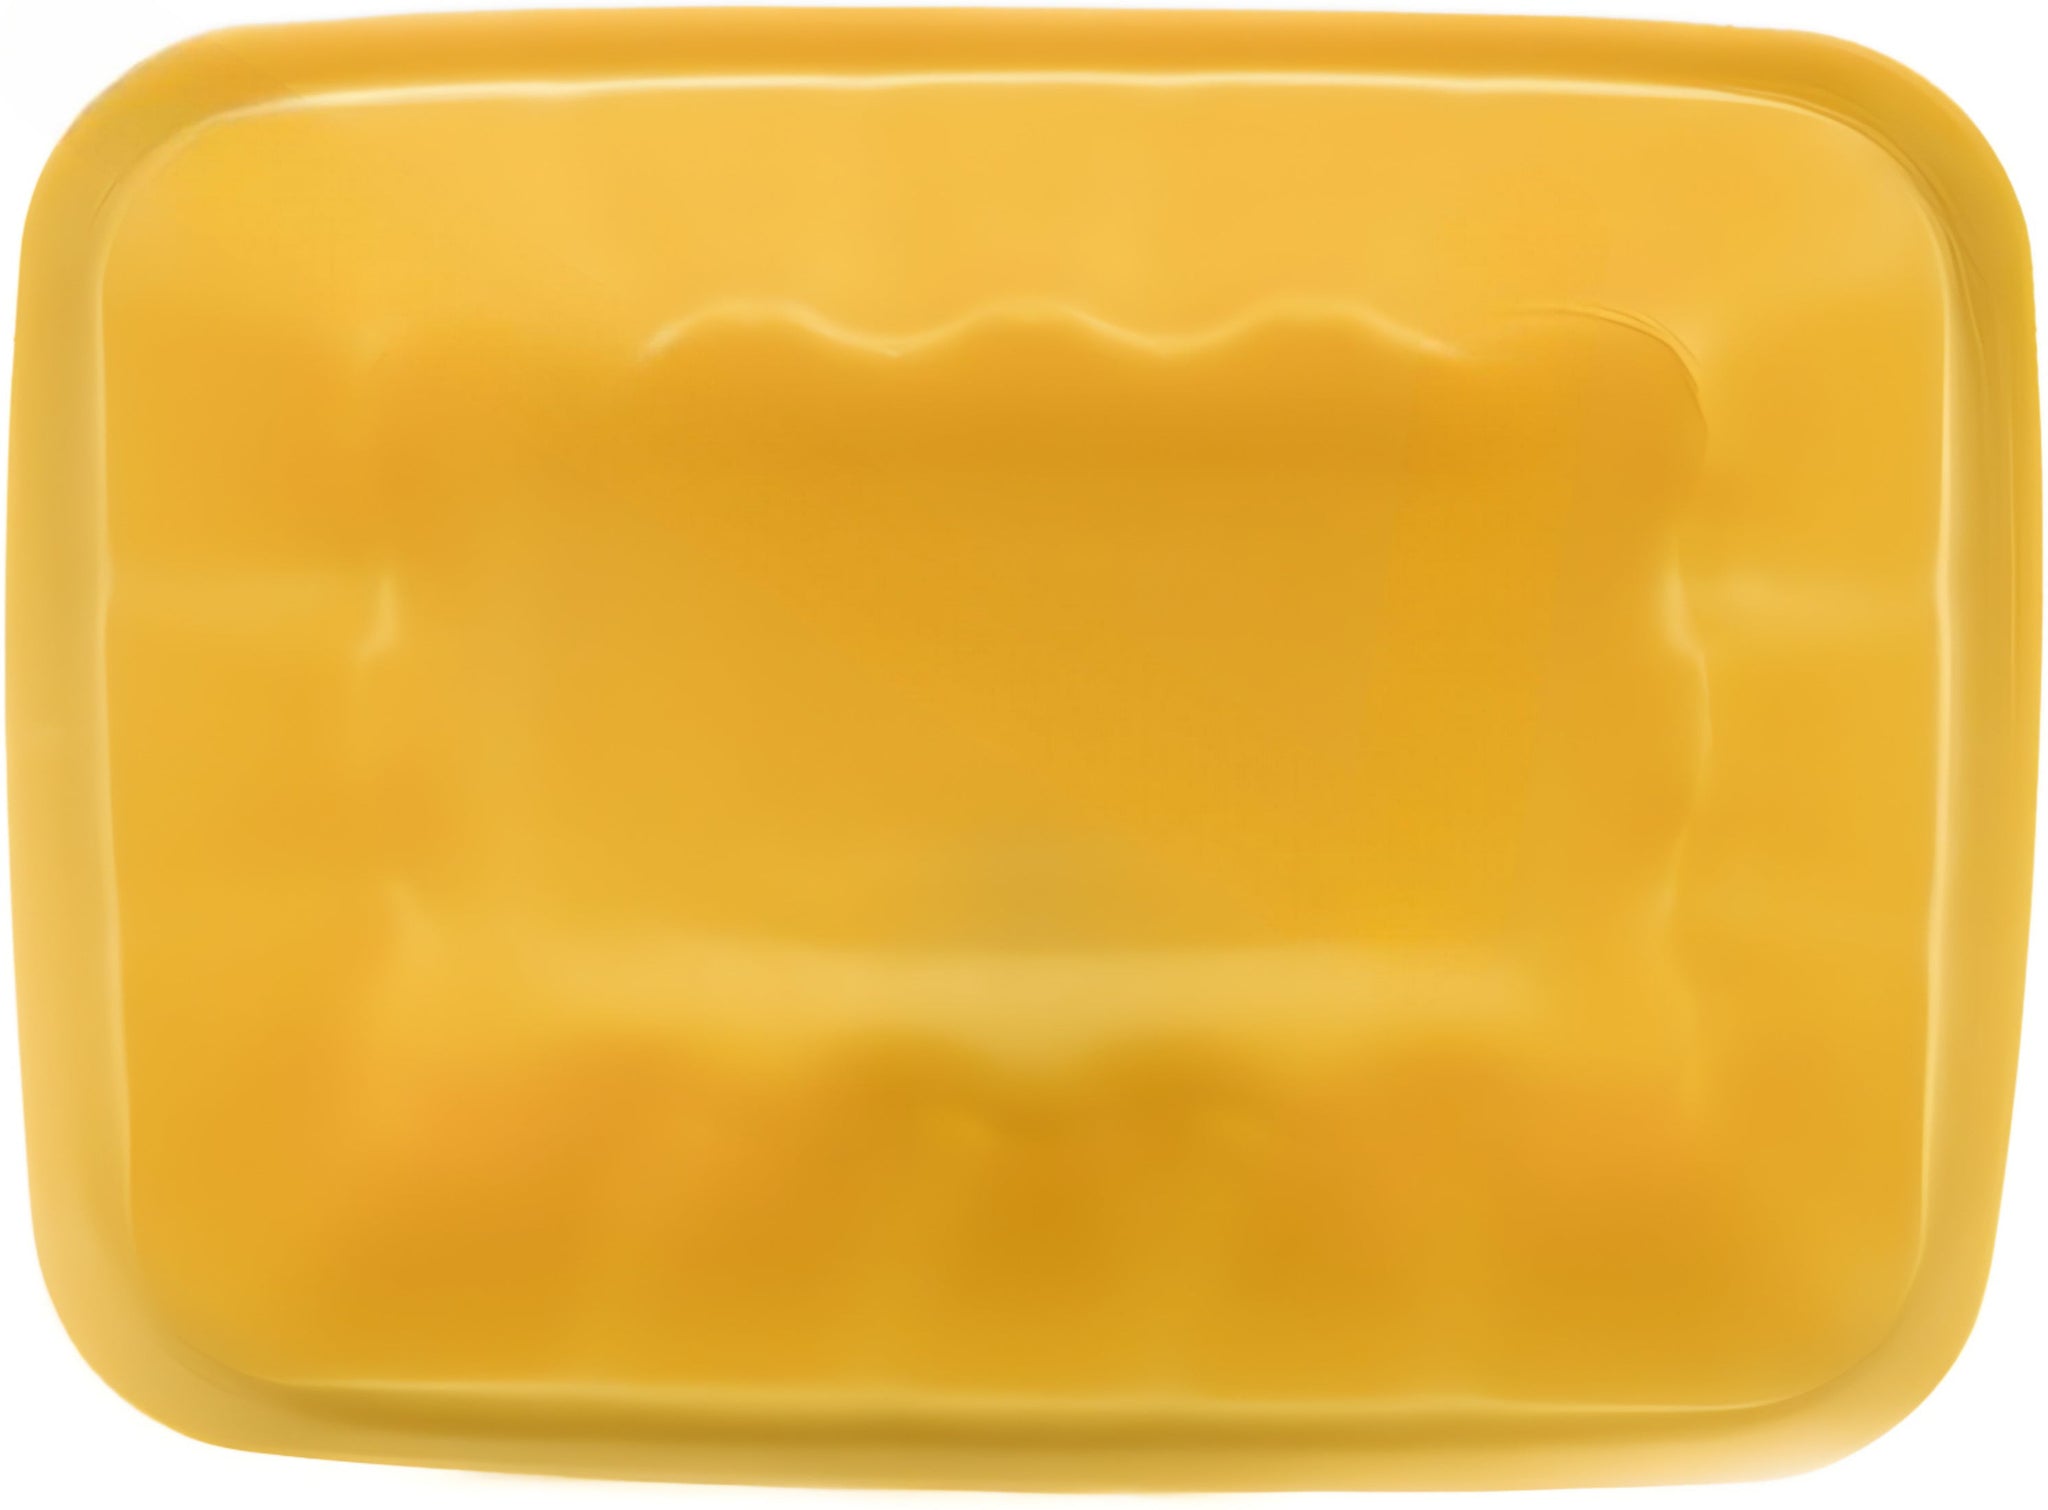 Dyne-A-Pak Inc. - 8.25" x 6" x 1.875" 42P Yellow Foam Meat Trays,400/cs - 201042PY00